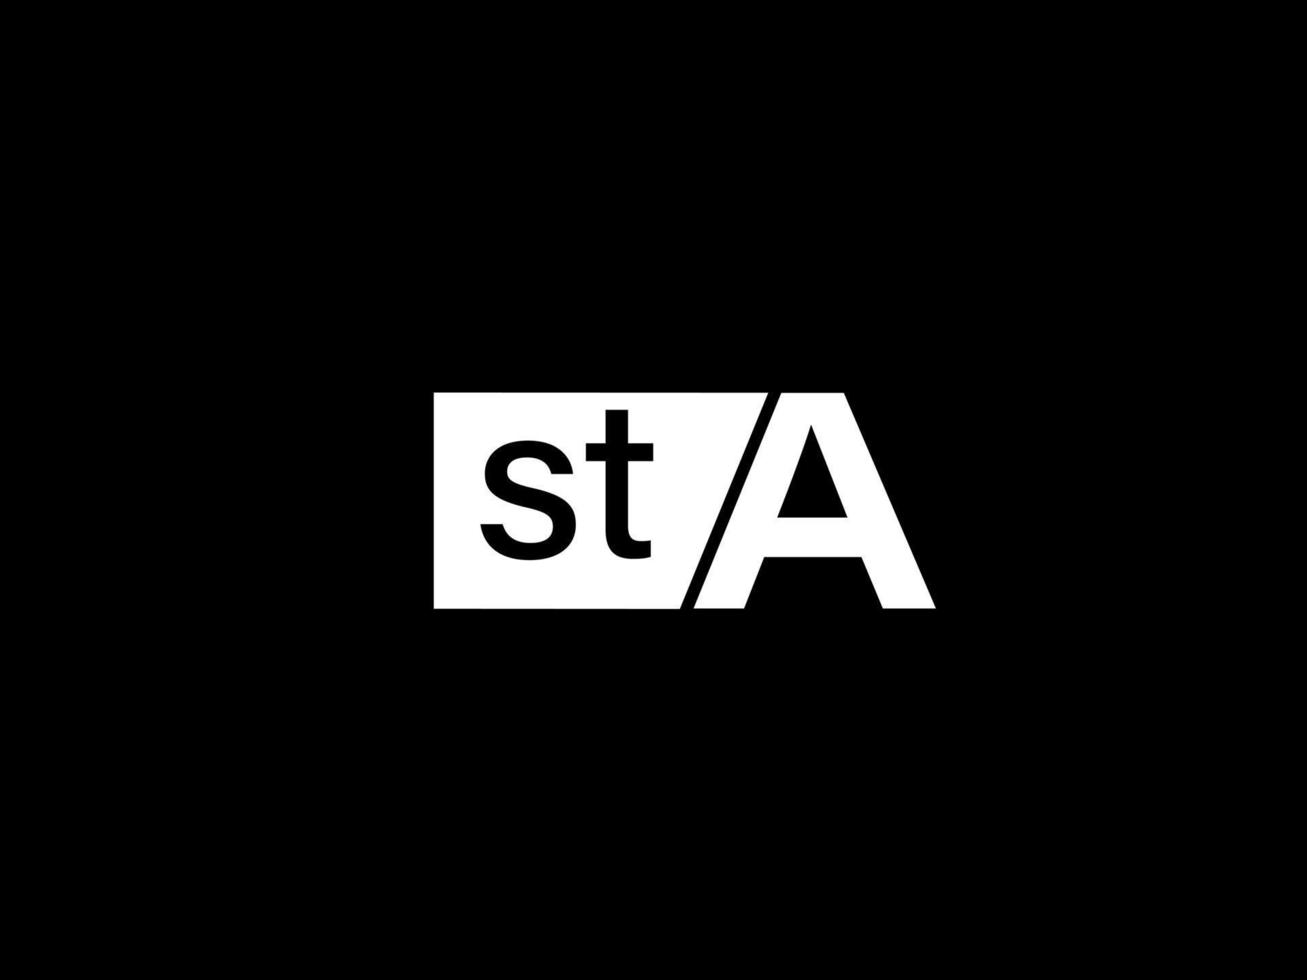 Sta-Logo und Grafikdesign, Vektorgrafiken, Symbole isoliert auf schwarzem Hintergrund vektor